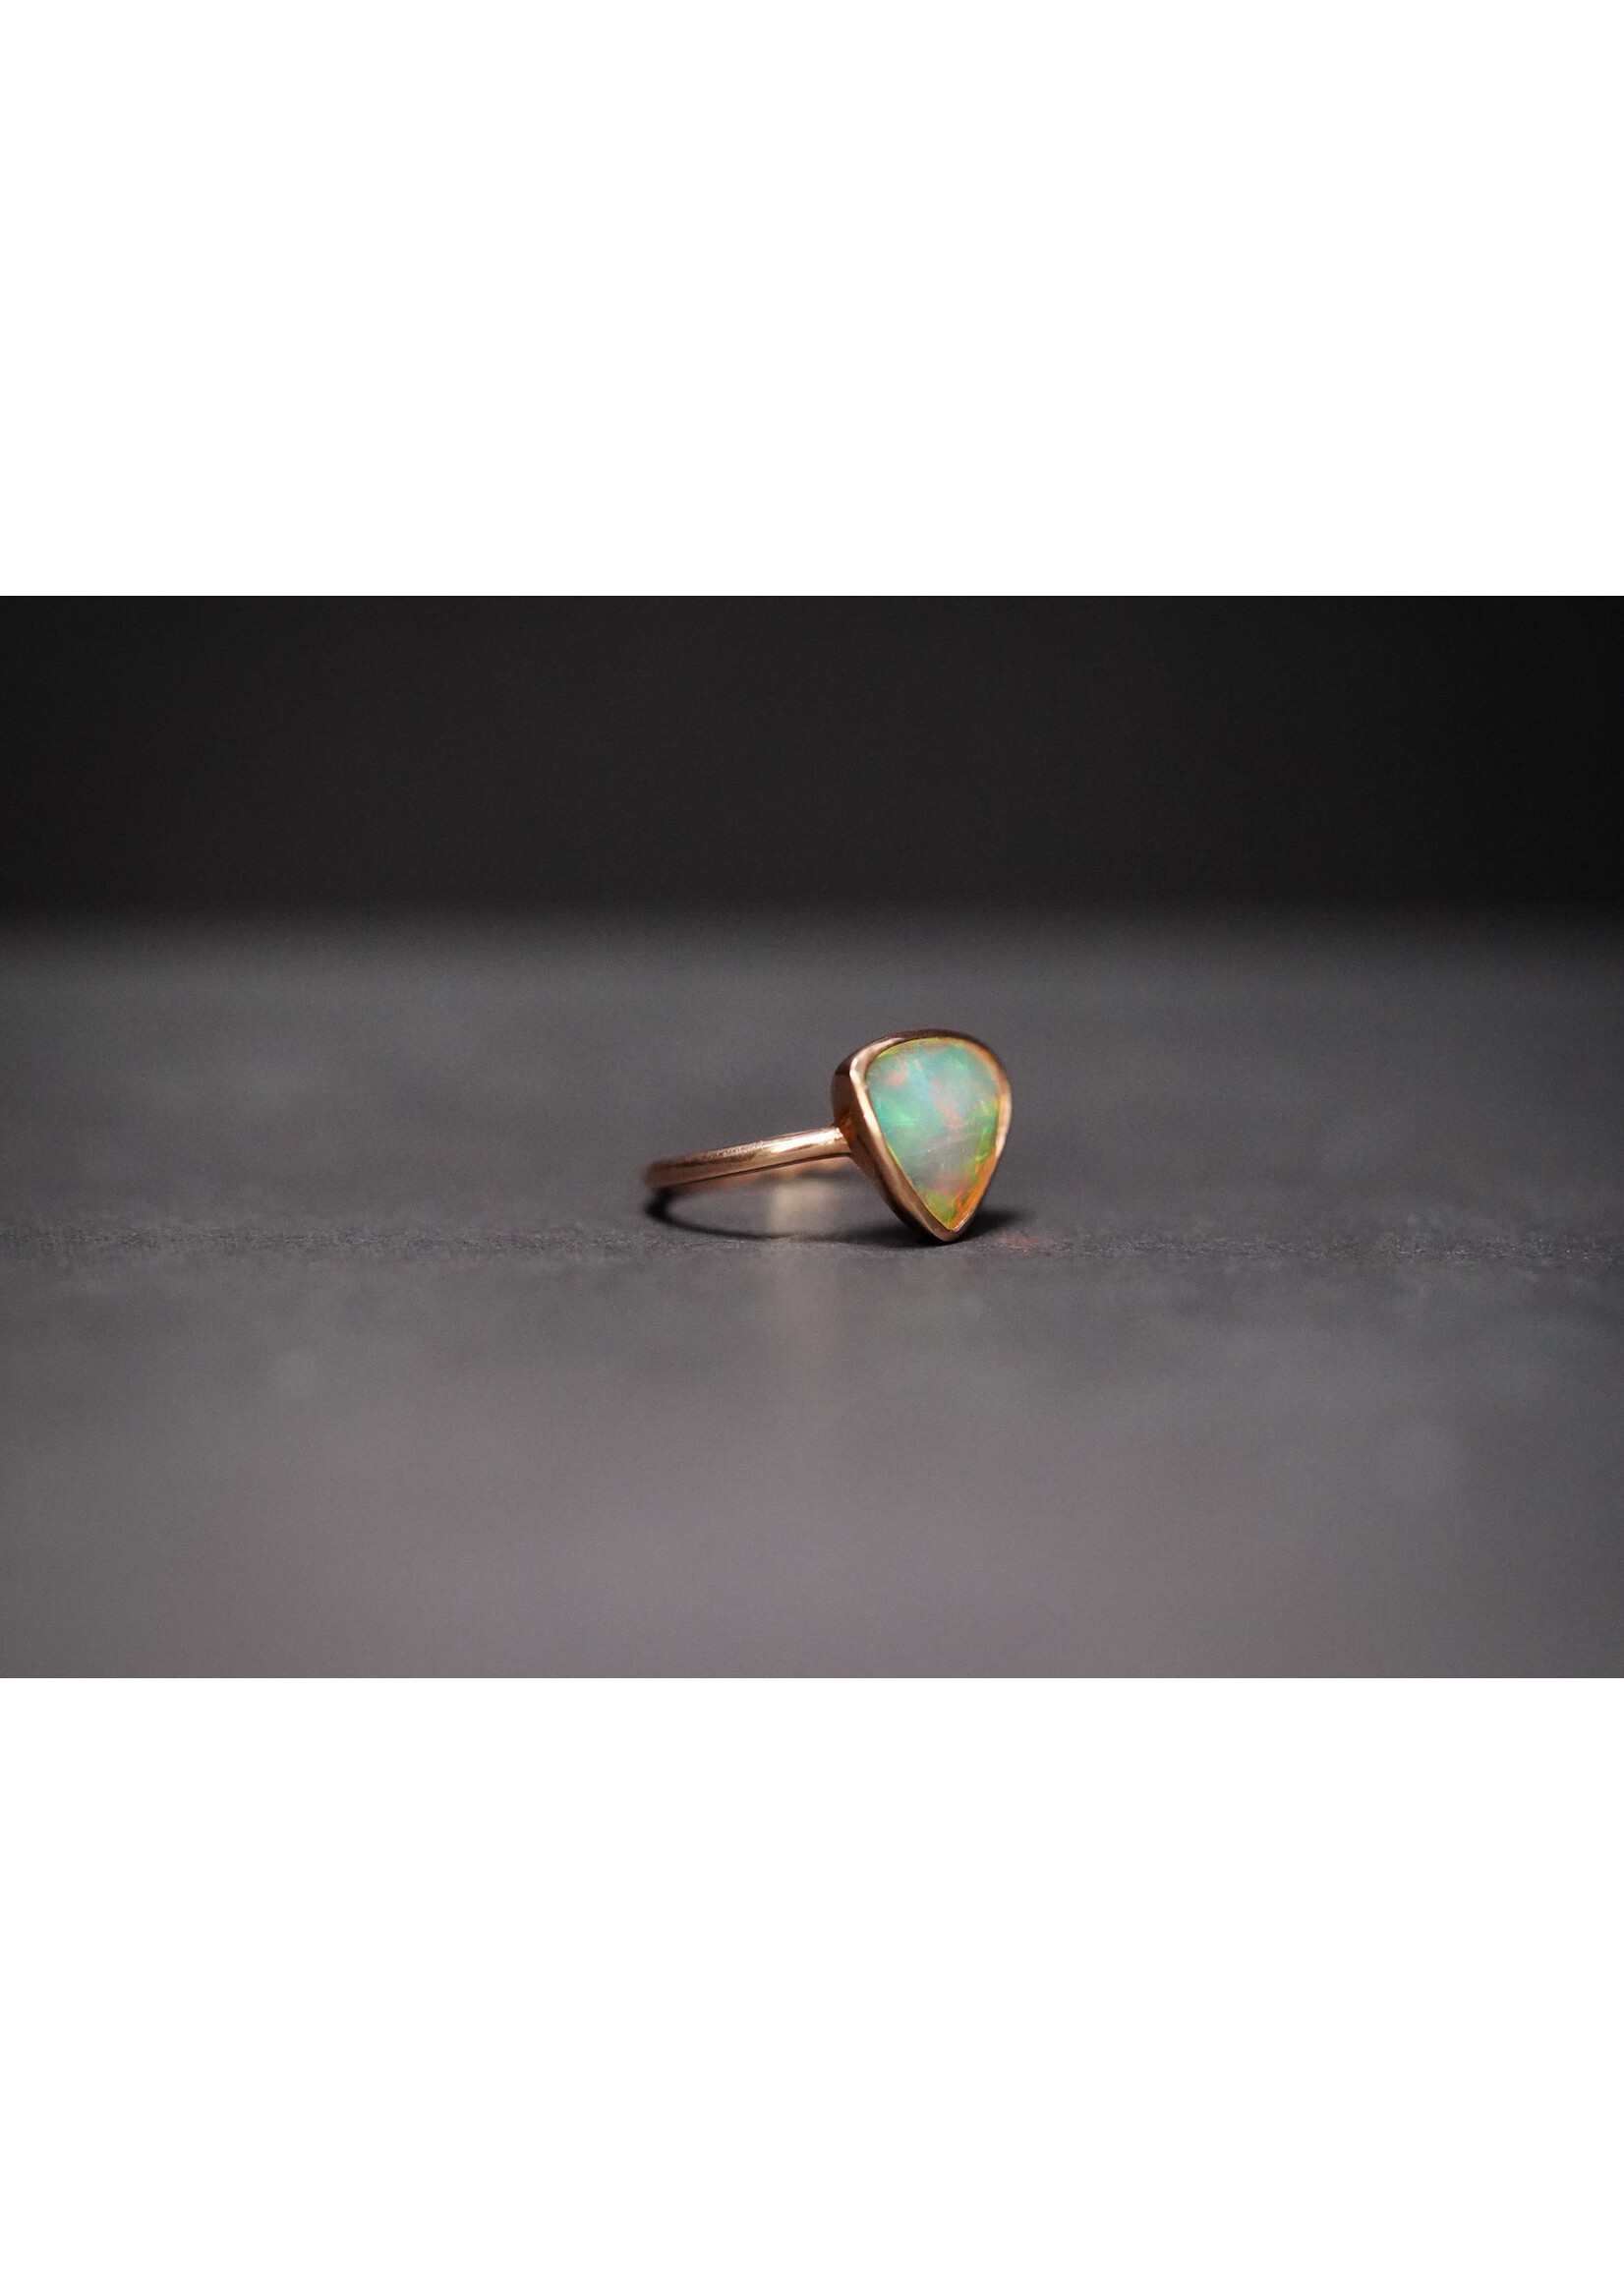 14KR 3.6g 1.41ct Geometric Opal Bezel Ring (size 7)